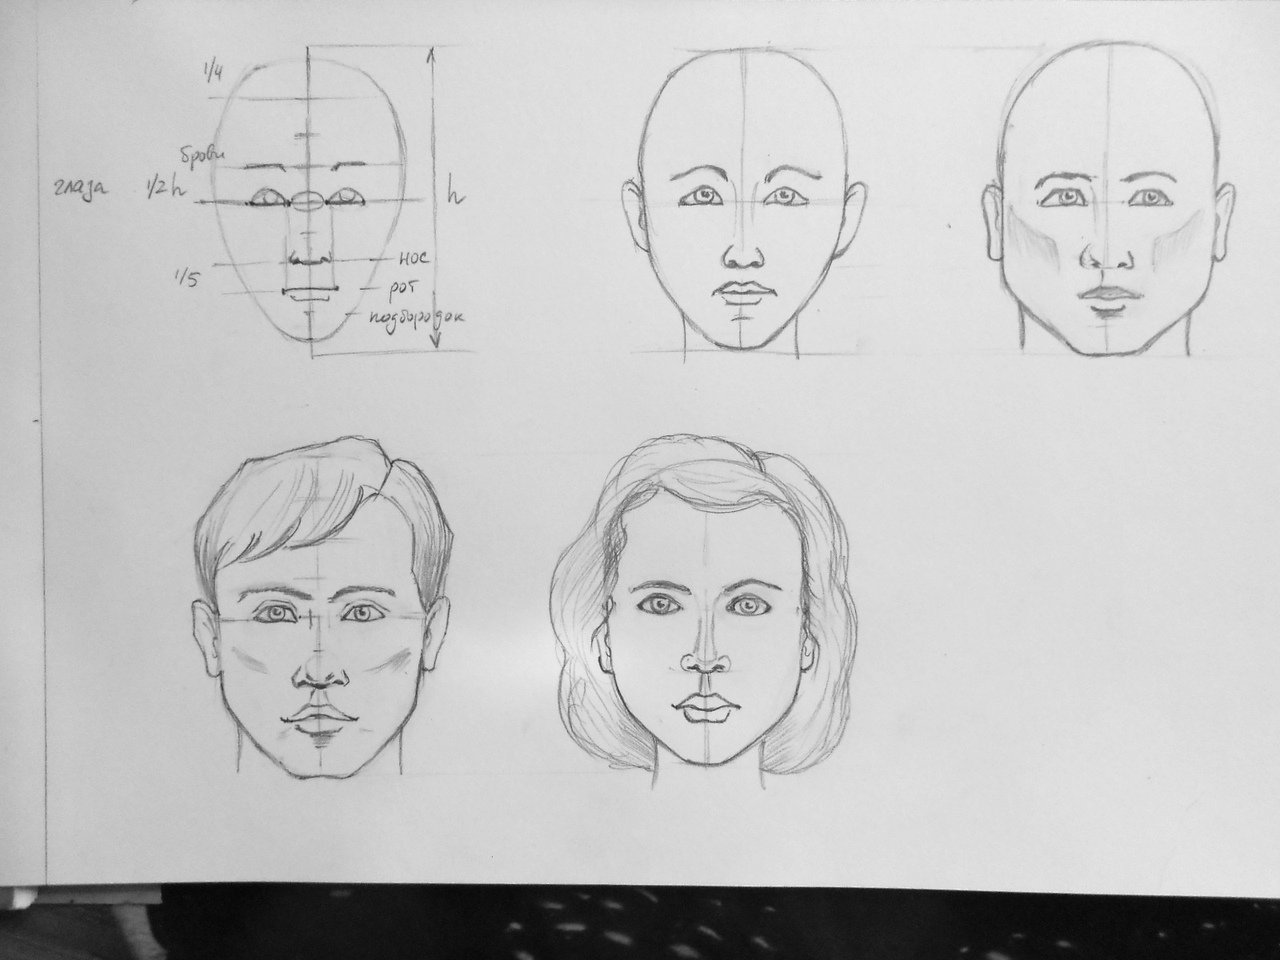 Как нарисовать портрет карандашом: поэтапный урок создания красивого портрета человека по фотографии (девушки, ребенка, мужчины)